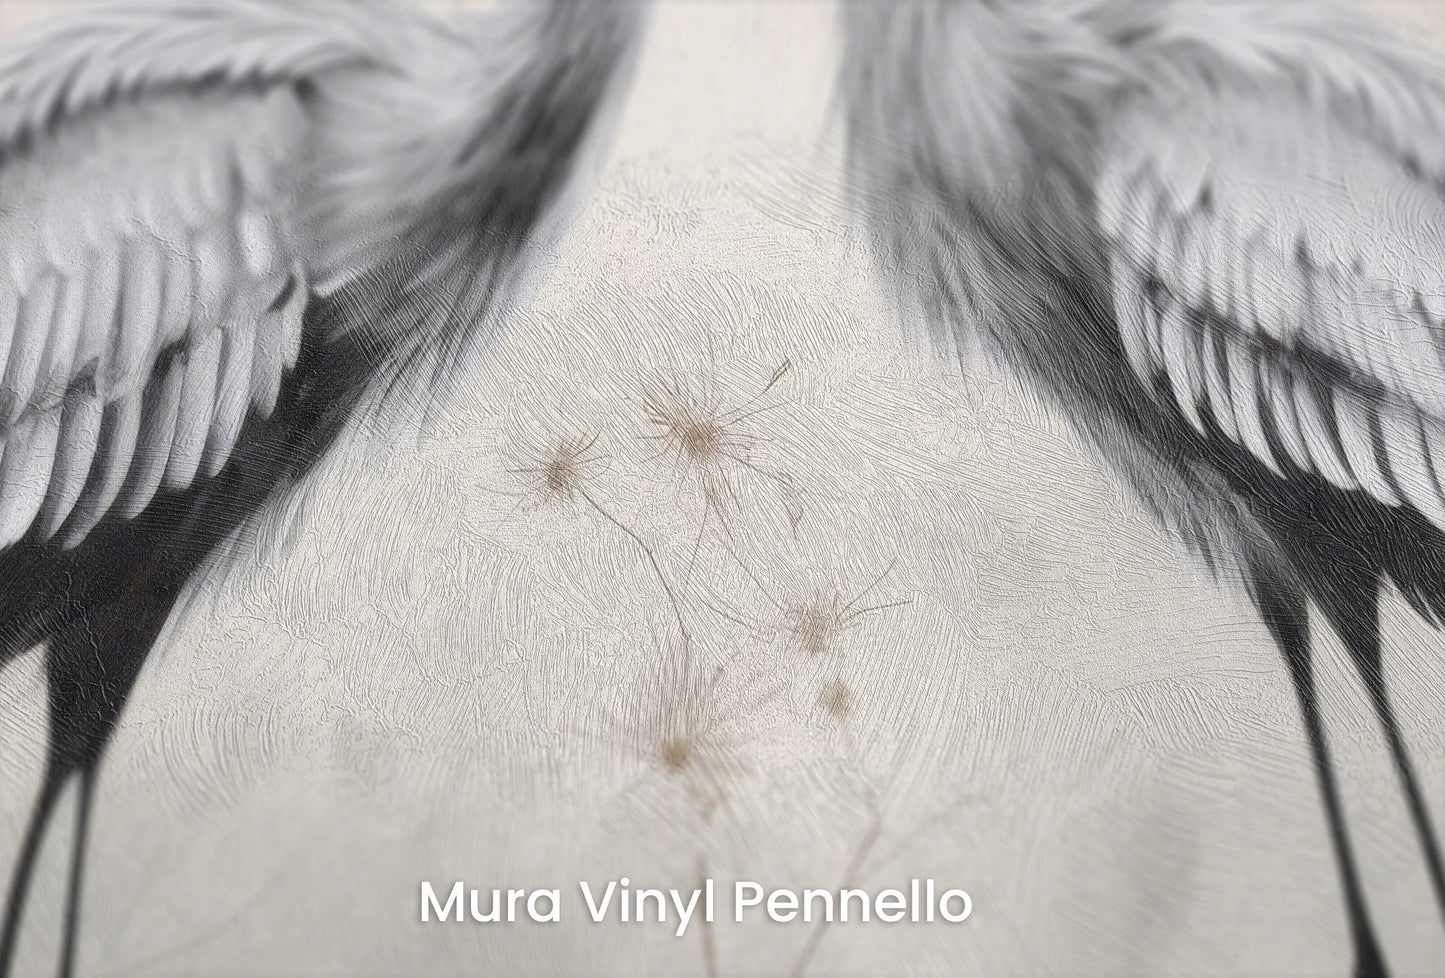 Zbliżenie na artystyczną fototapetę o nazwie Silent Duet na podłożu Mura Vinyl Pennello - faktura pociągnięć pędzla malarskiego.